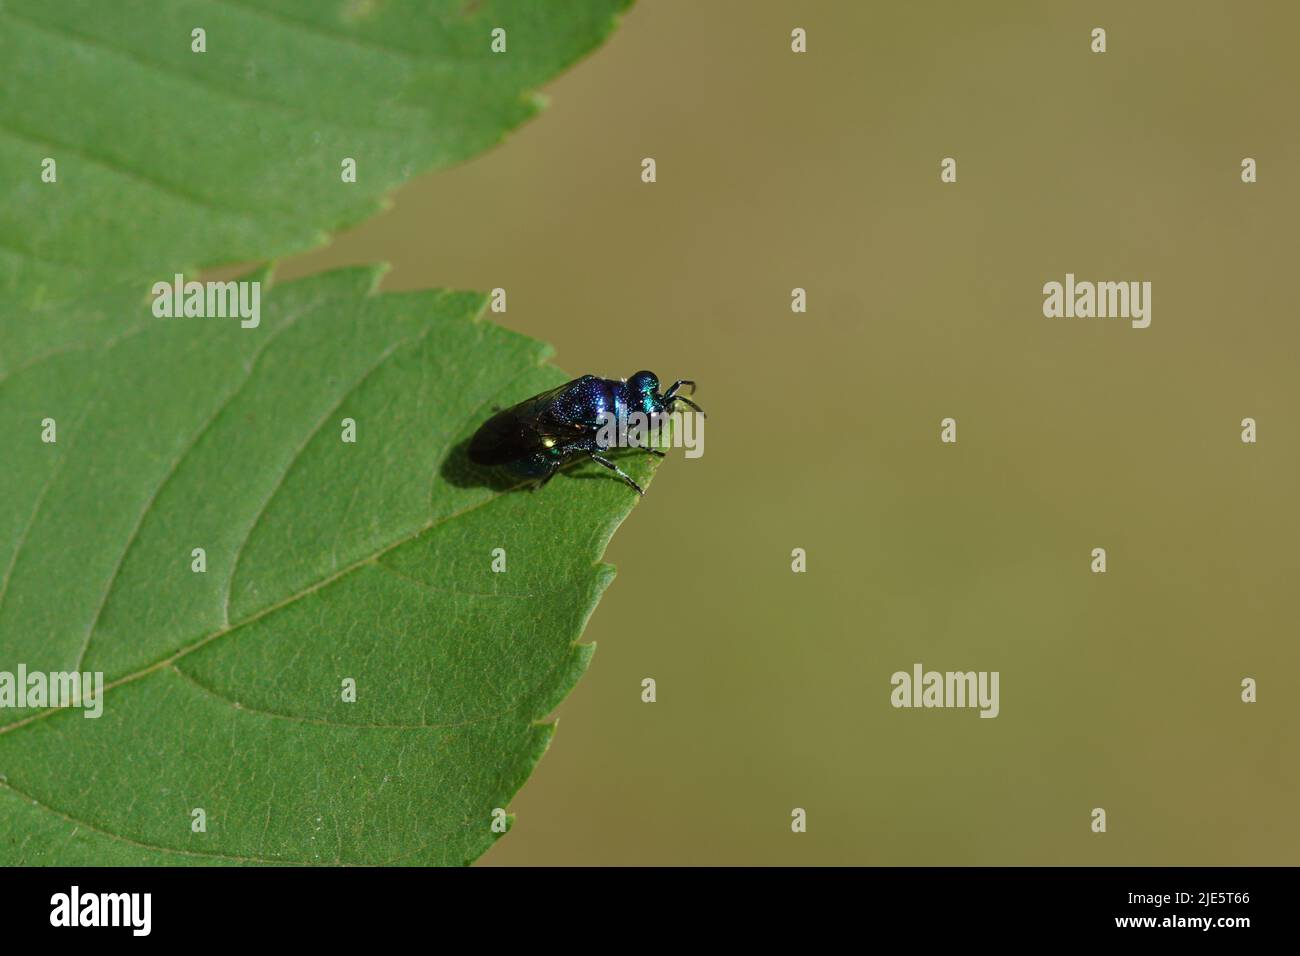 Nahaufnahme von Pseudomalus, einer kleinen, blauen Kuckucksuhr, Smaragdwespe, Familie Chrysididae. Auf einem Blatt. Holländischer Garten, Juni Stockfoto